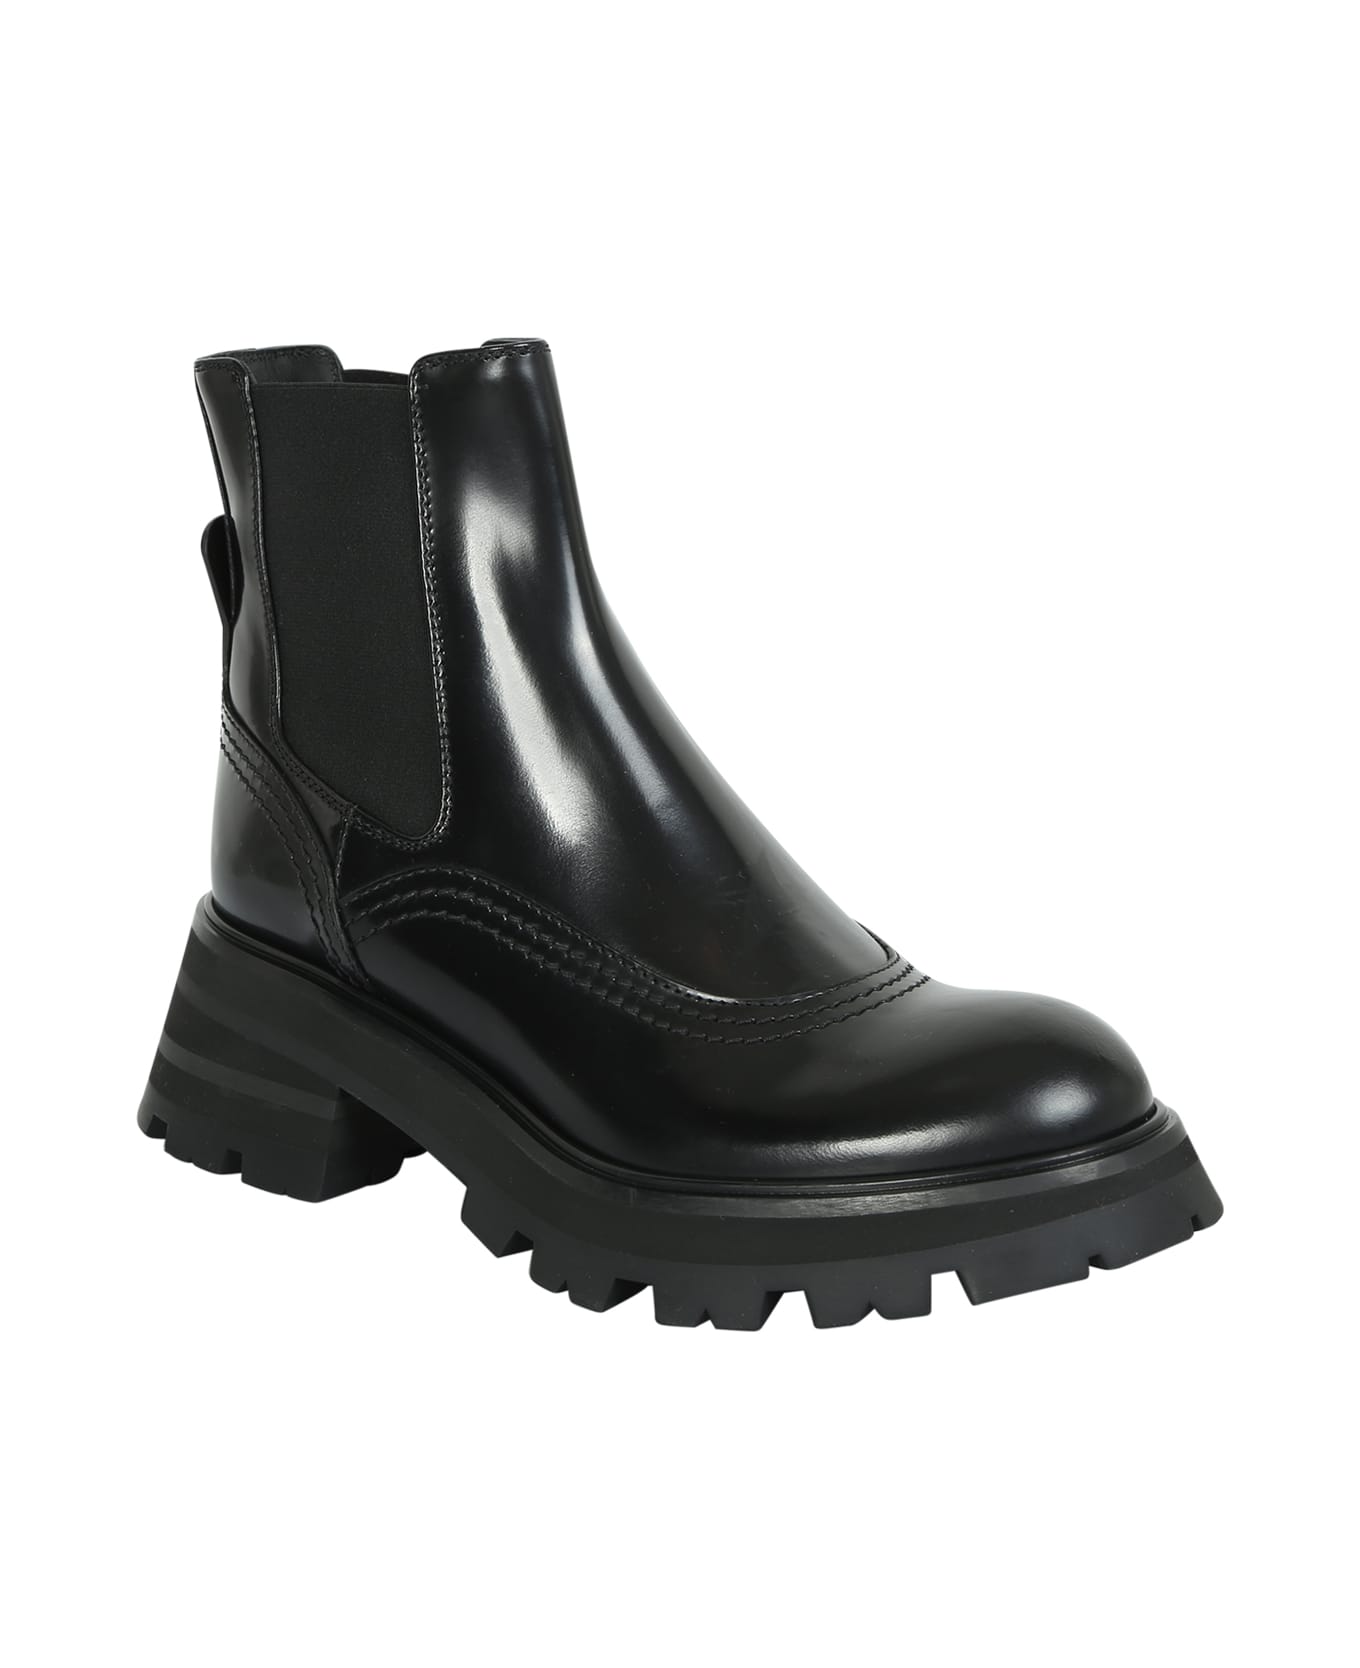 Alexander McQueen Wander Chelsea Boots - Black ブーツ